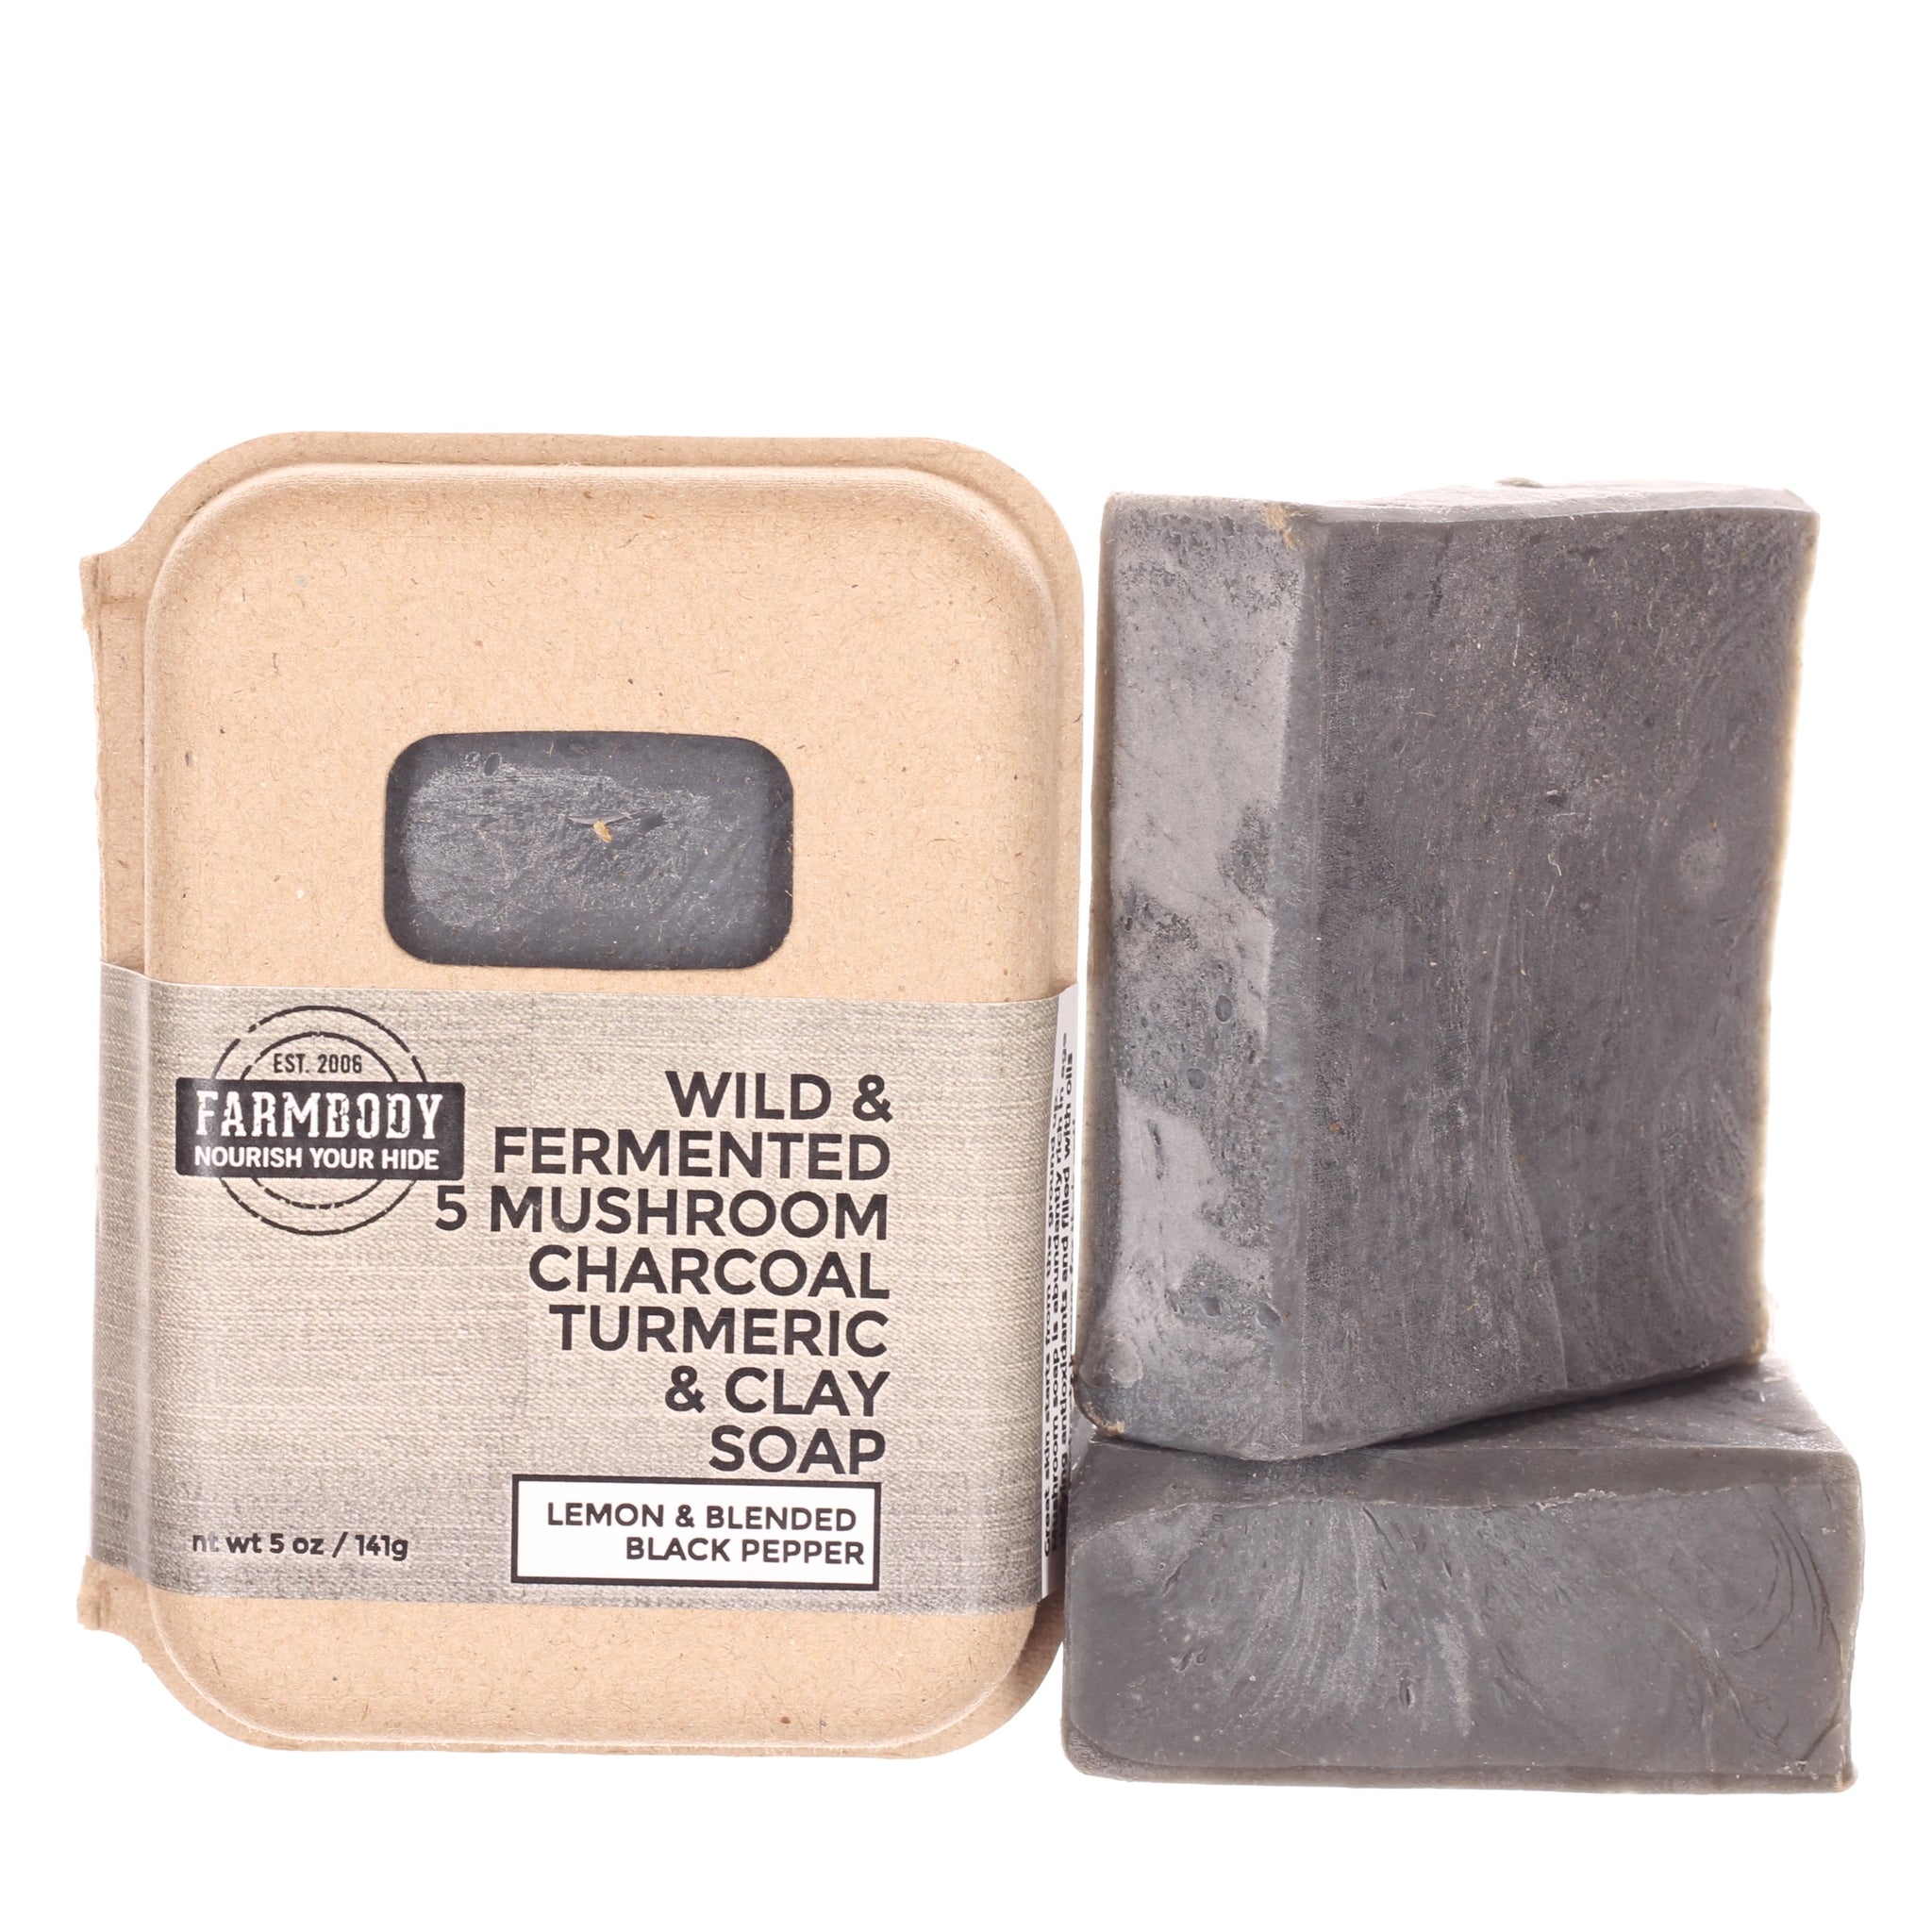 Wild & Fermented 5 Mushroom Charcoal Turmeric & Clay Soap | Black Pepper & Lemon - Farmbody